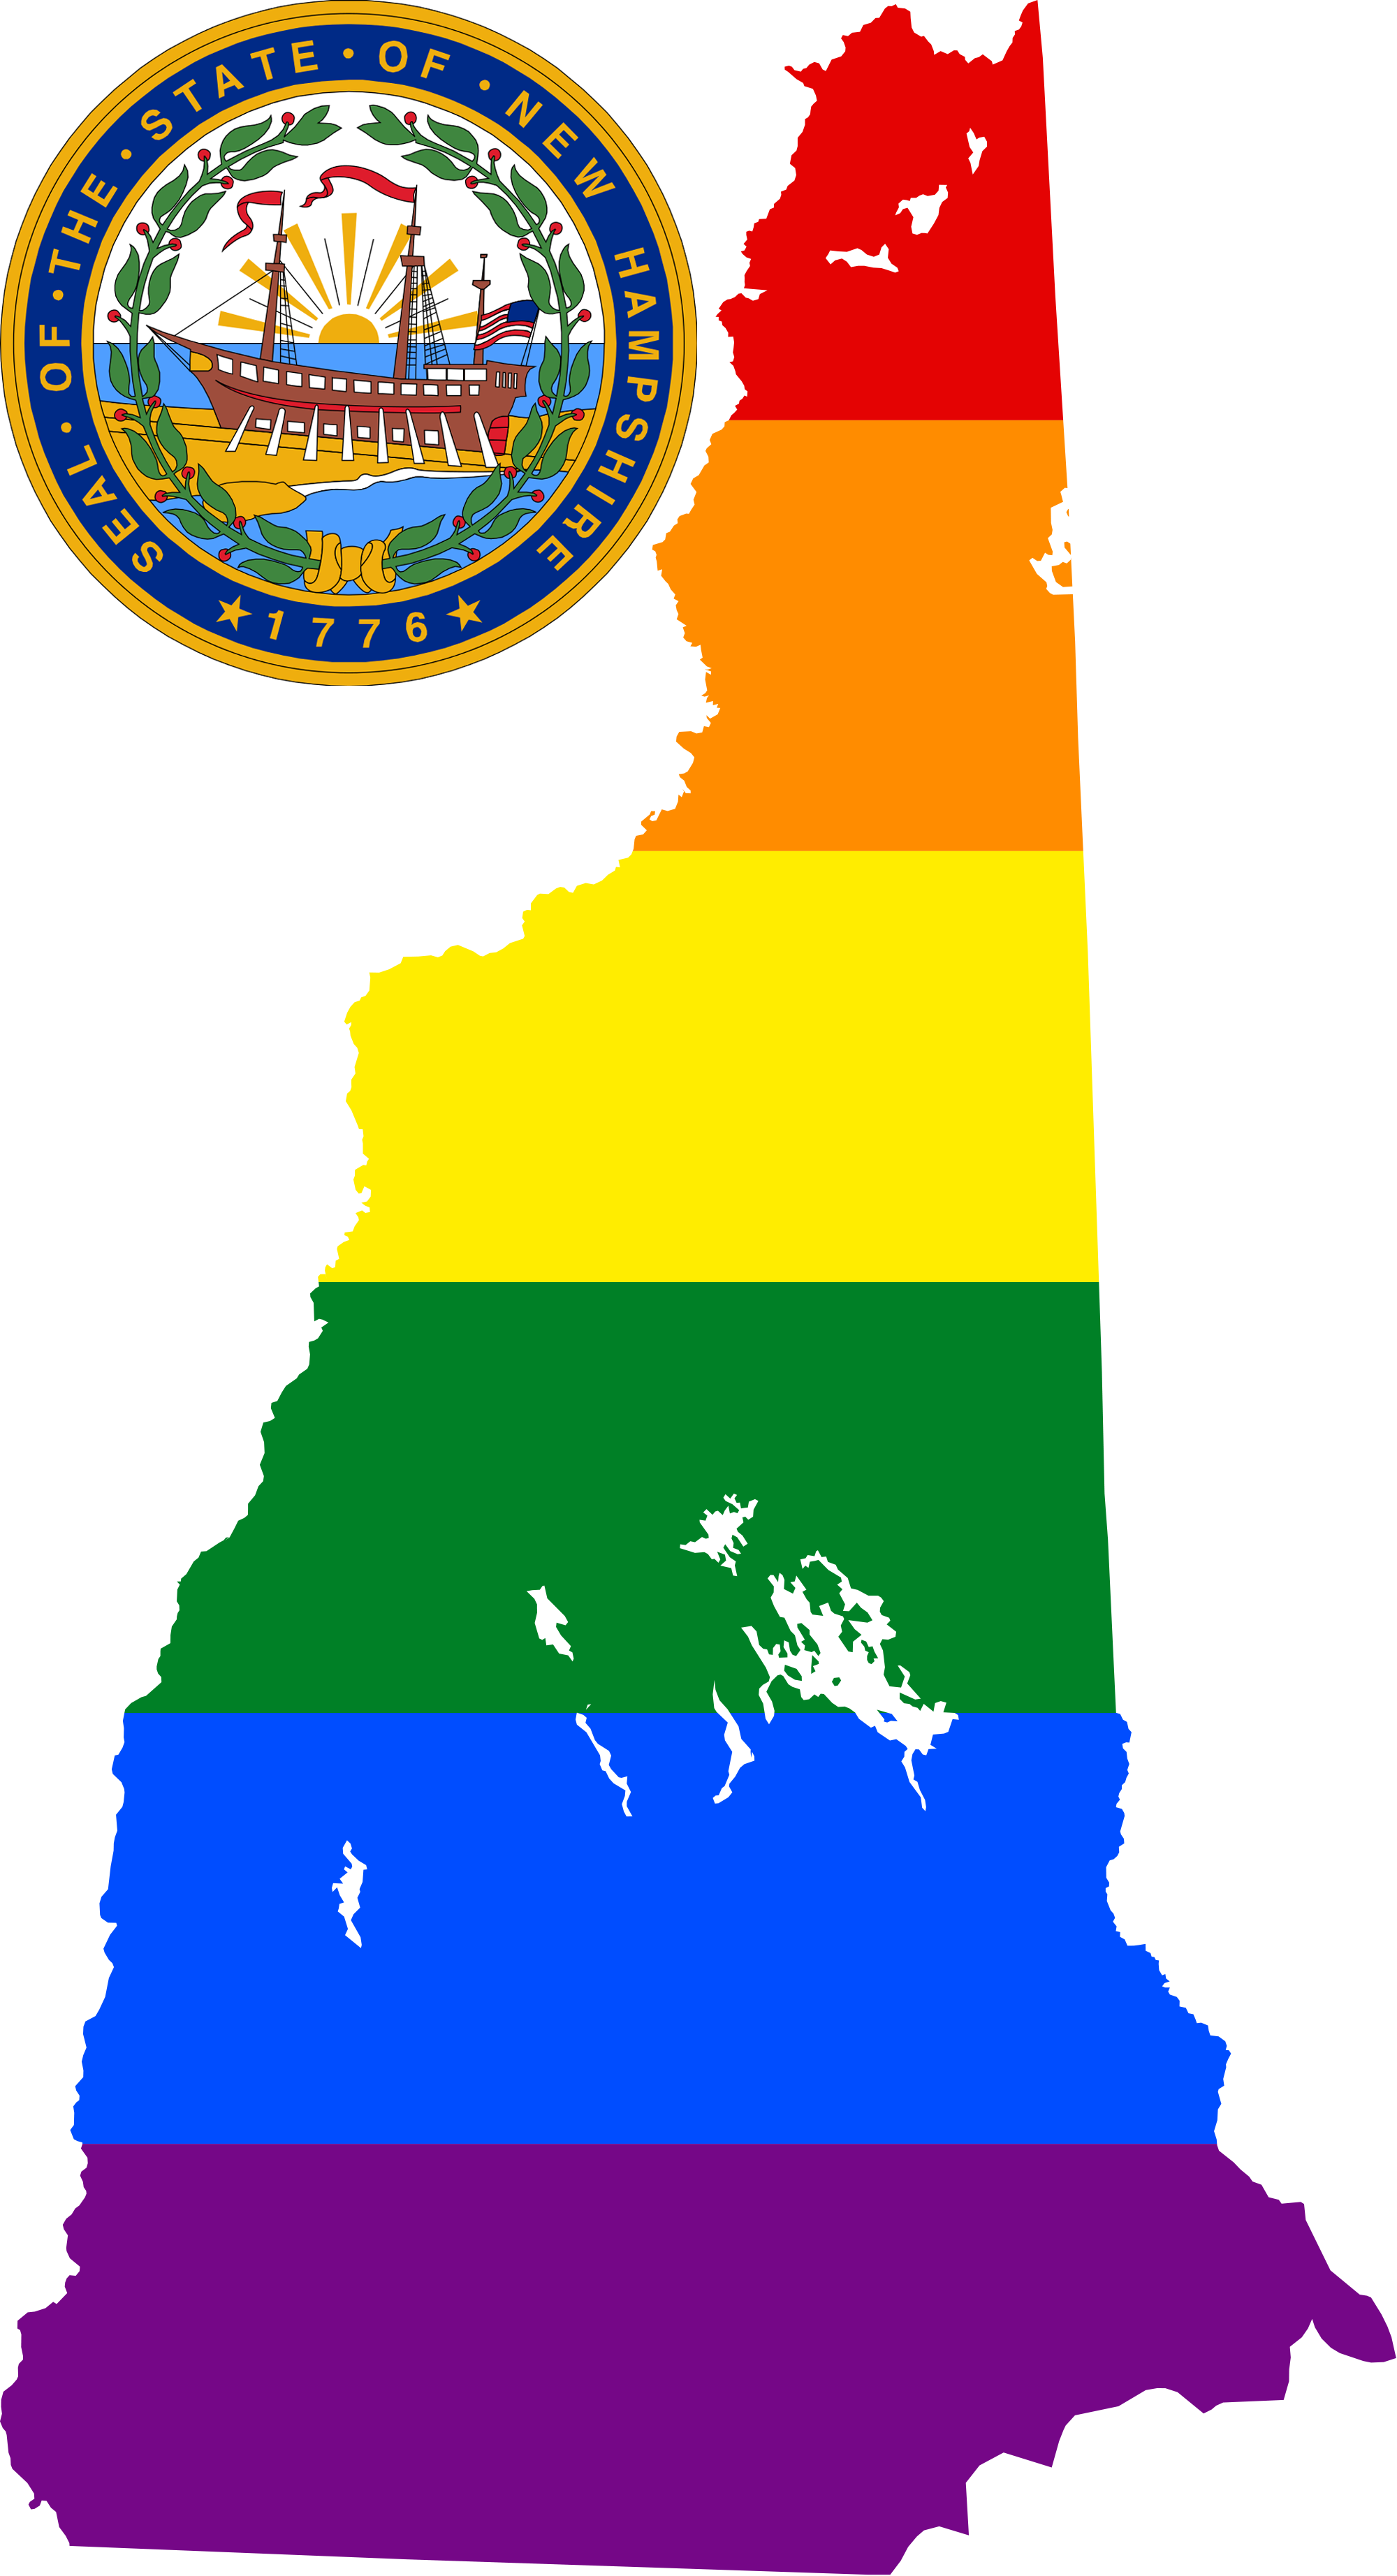 New Hampshire LGBTQ